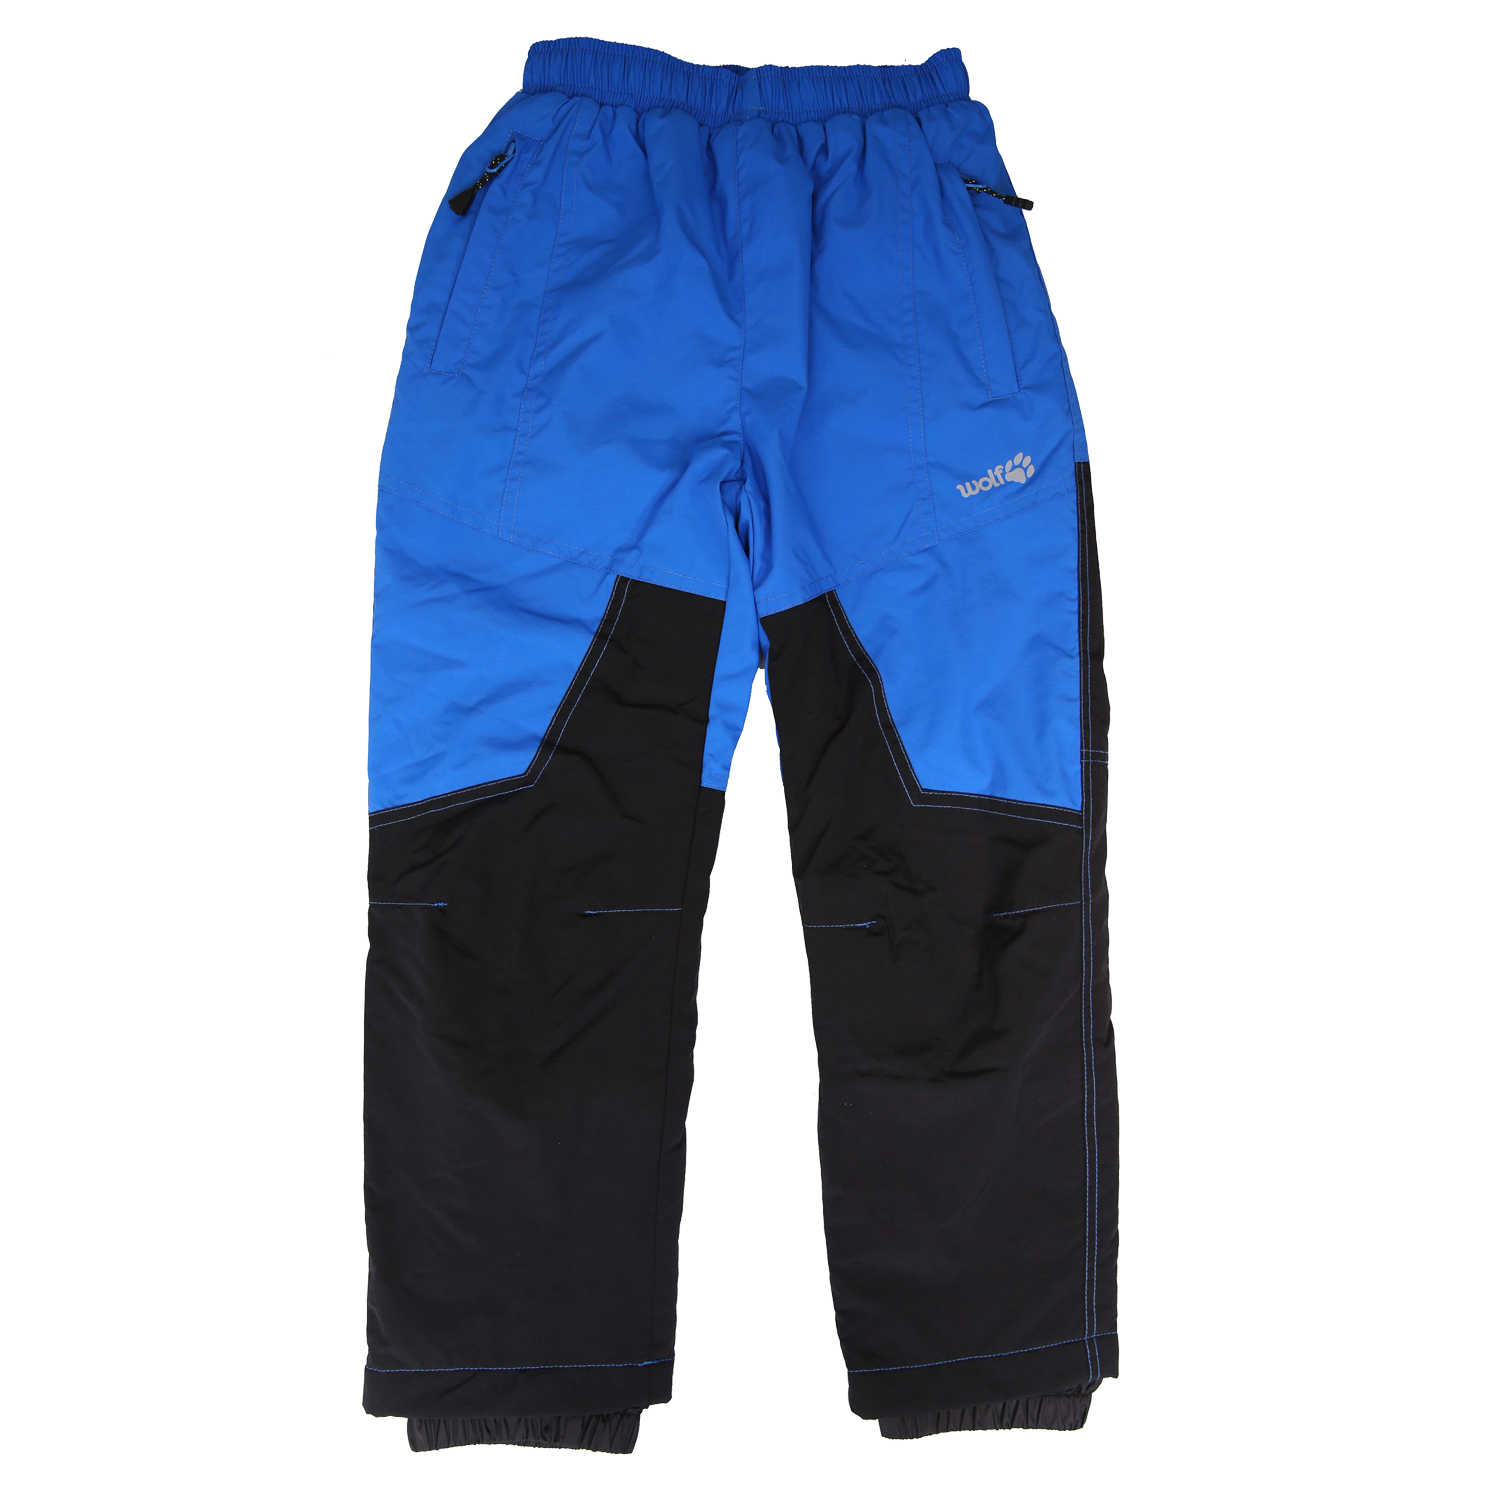 Chlapecké šusťákové kalhoty, zateplené - Wolf B2174, modrá/ černá Barva: Modrá, Velikost: 98